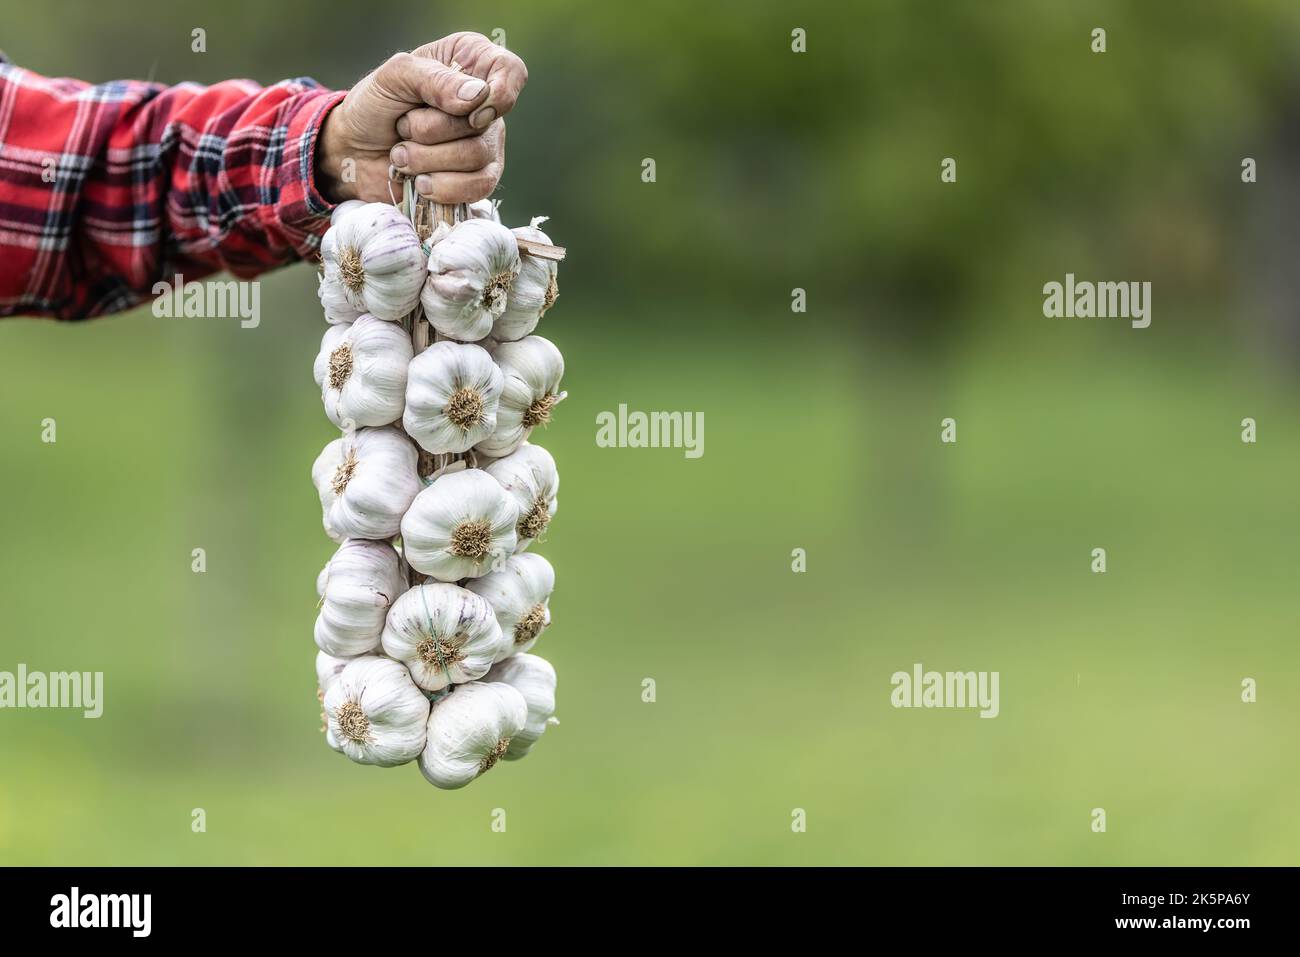 La mano maschio stringe le teste bianche dell'aglio dopo un raccolto. Foto Stock